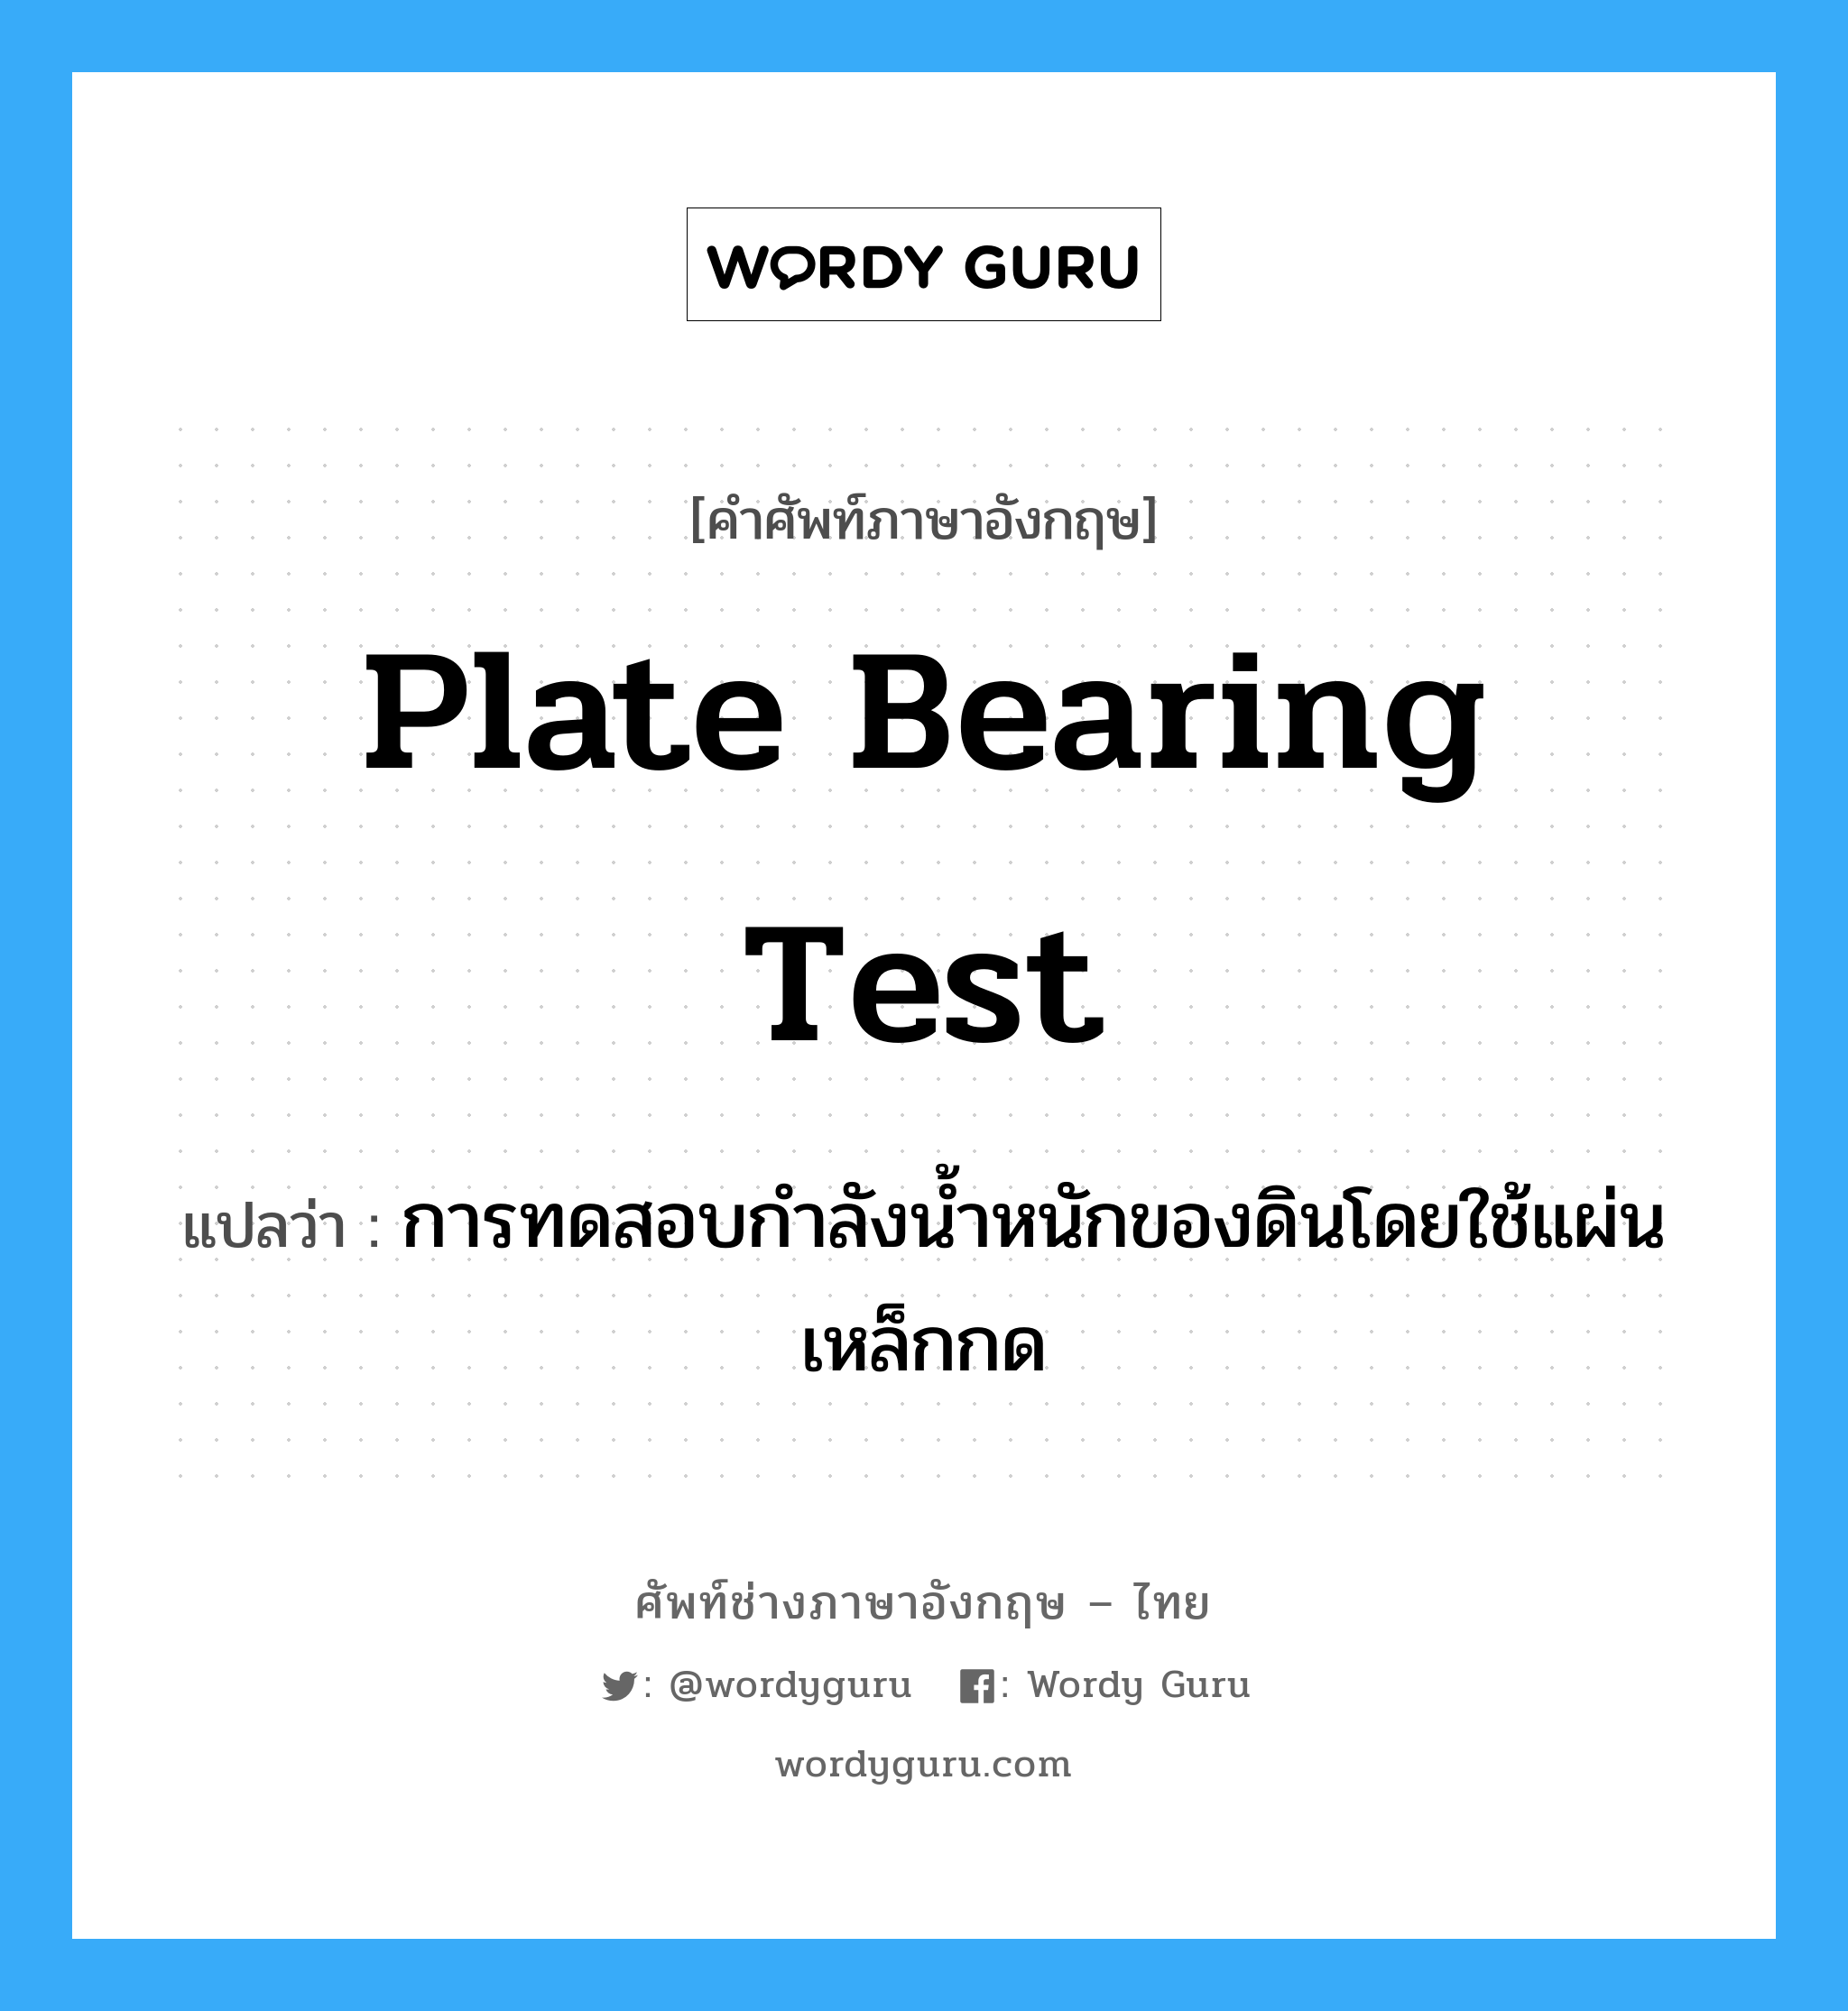 plate bearing test แปลว่า?, คำศัพท์ช่างภาษาอังกฤษ - ไทย plate bearing test คำศัพท์ภาษาอังกฤษ plate bearing test แปลว่า การทดสอบกำลังน้ำหนักของดินโดยใช้แผ่นเหล็กกด